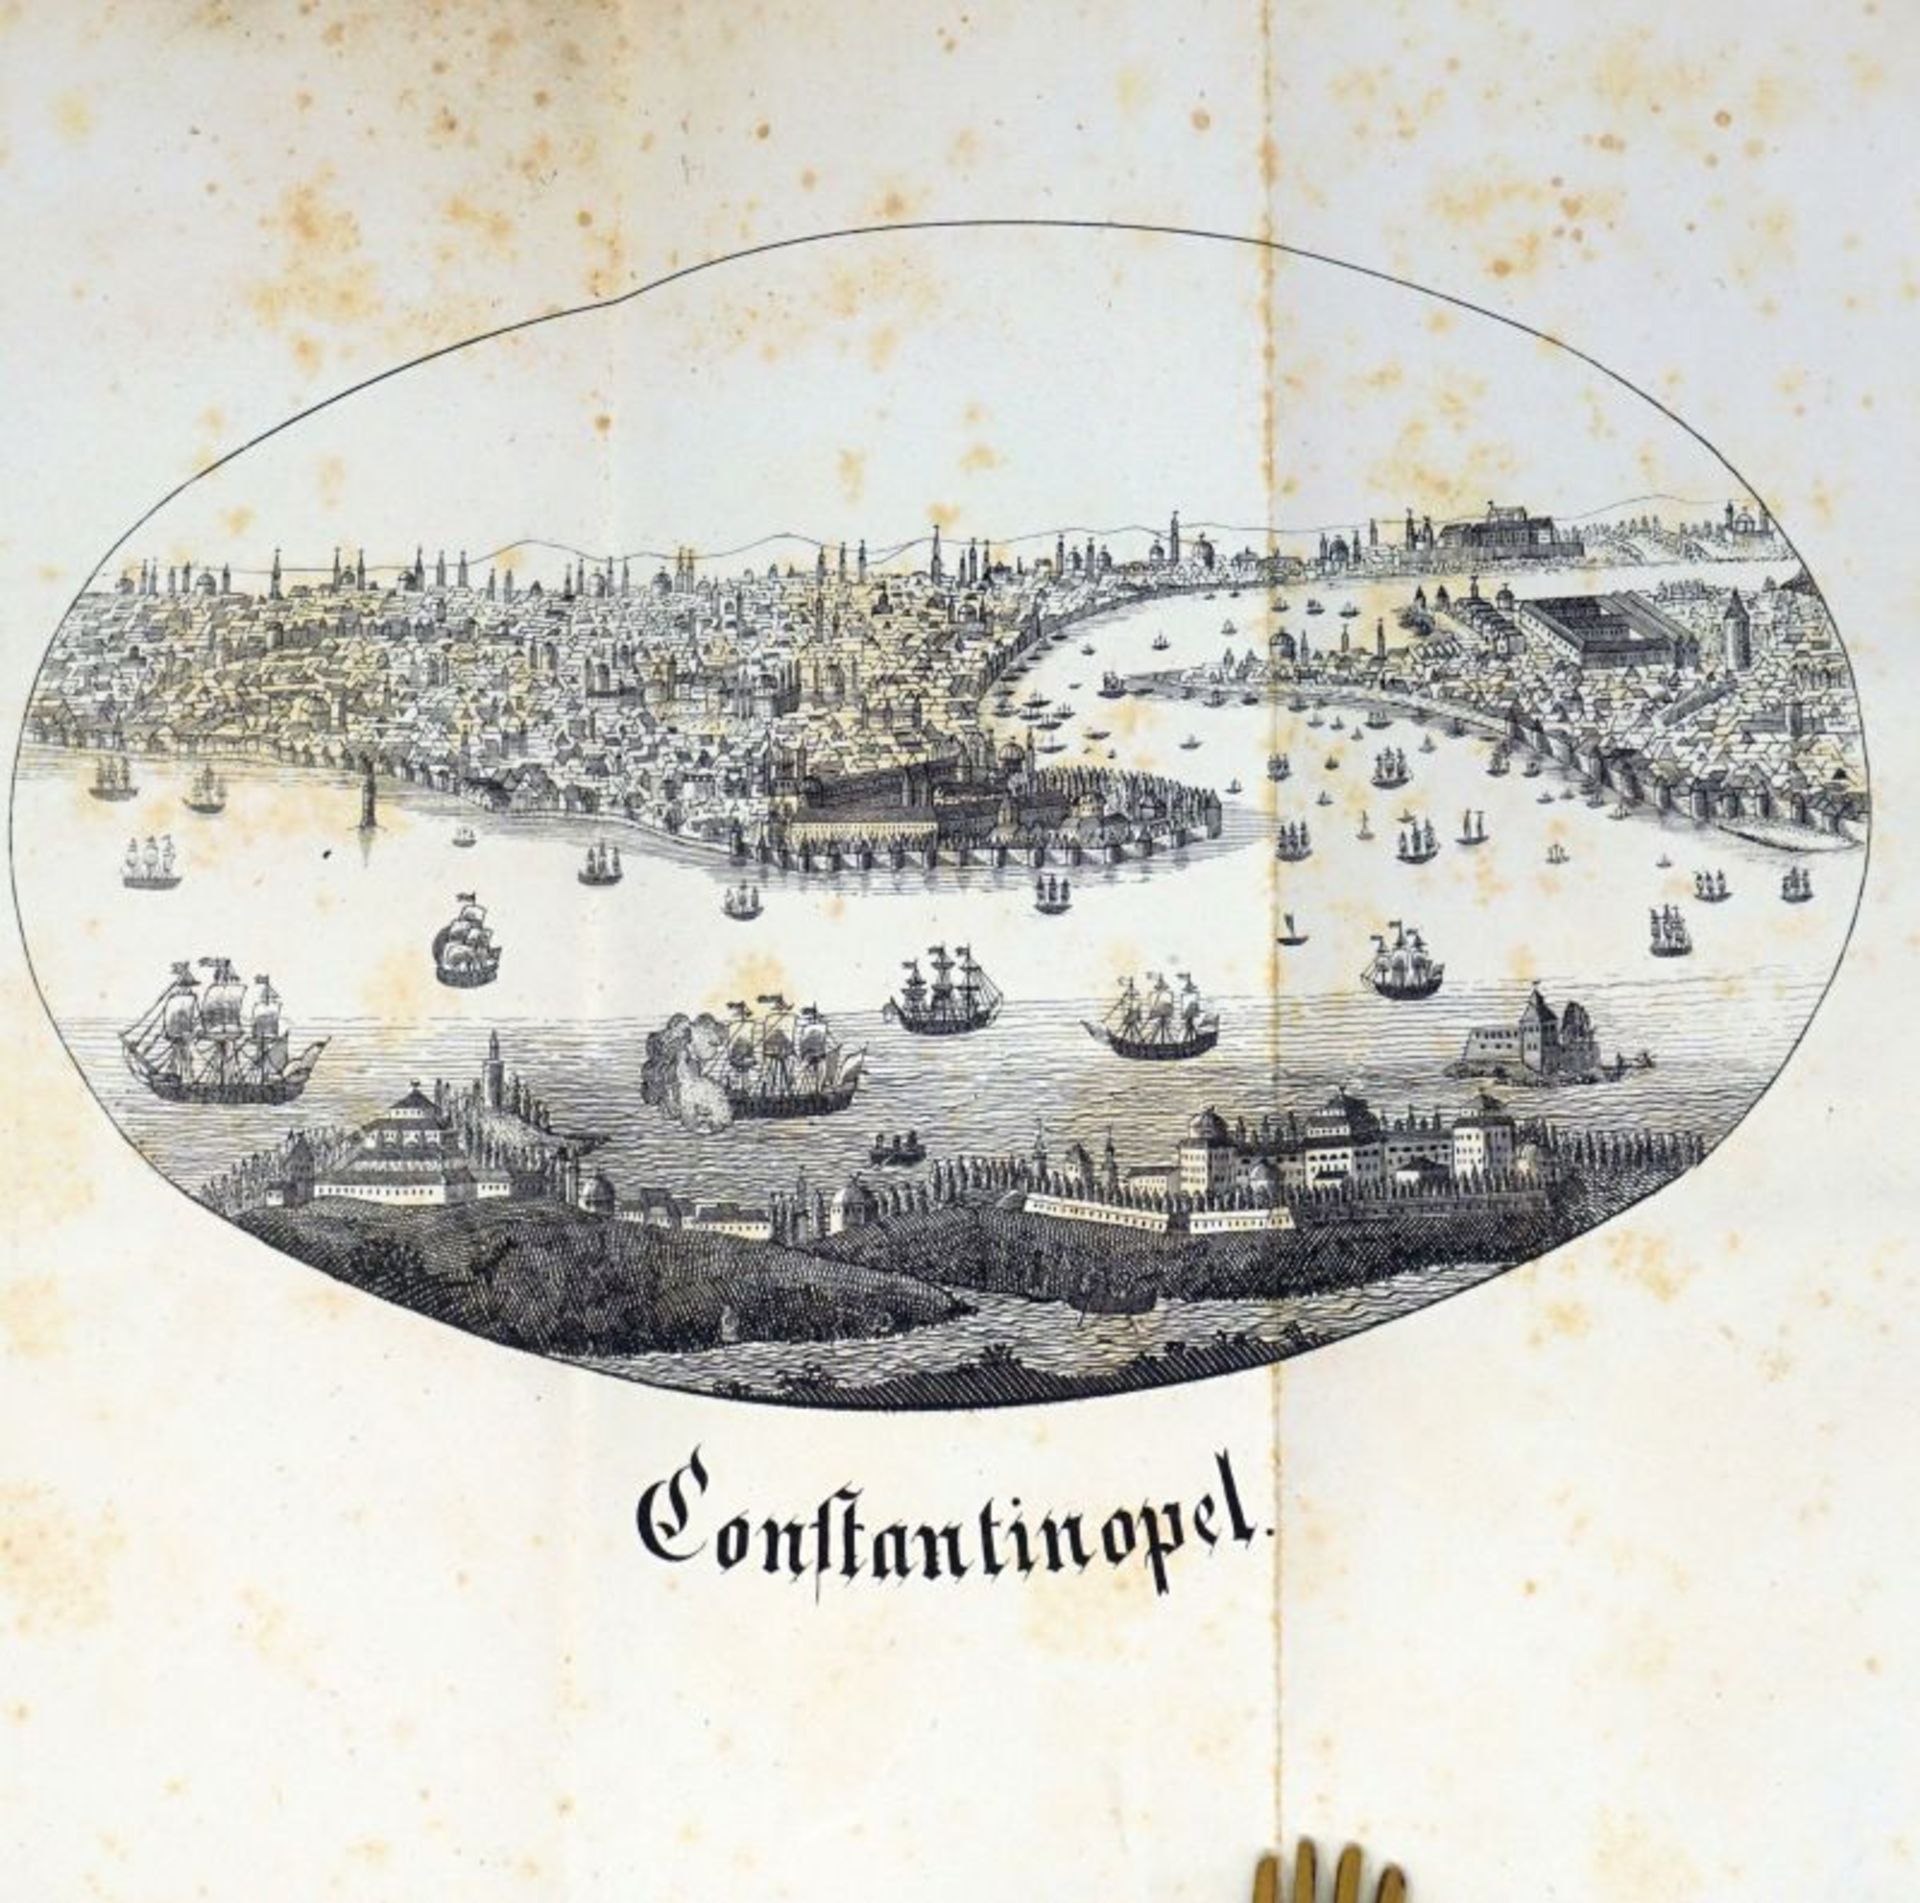 Zrecin, J.: Beschreibung der Kaiserstadt Constantinopel